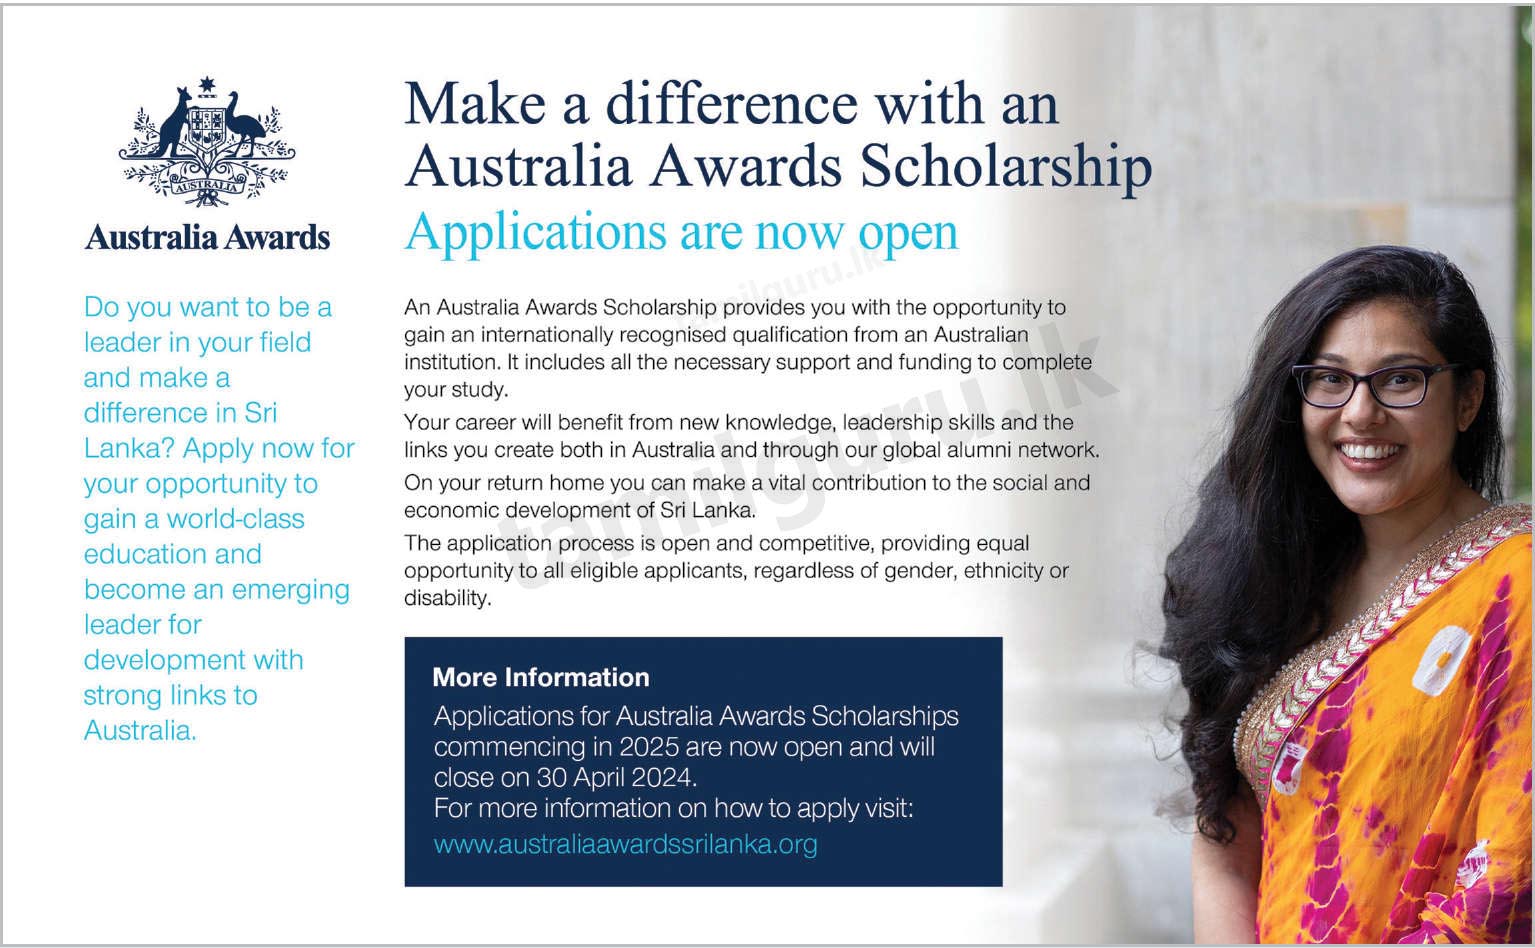 Australia Awards Scholarships Application 2025 for Sri Lanka